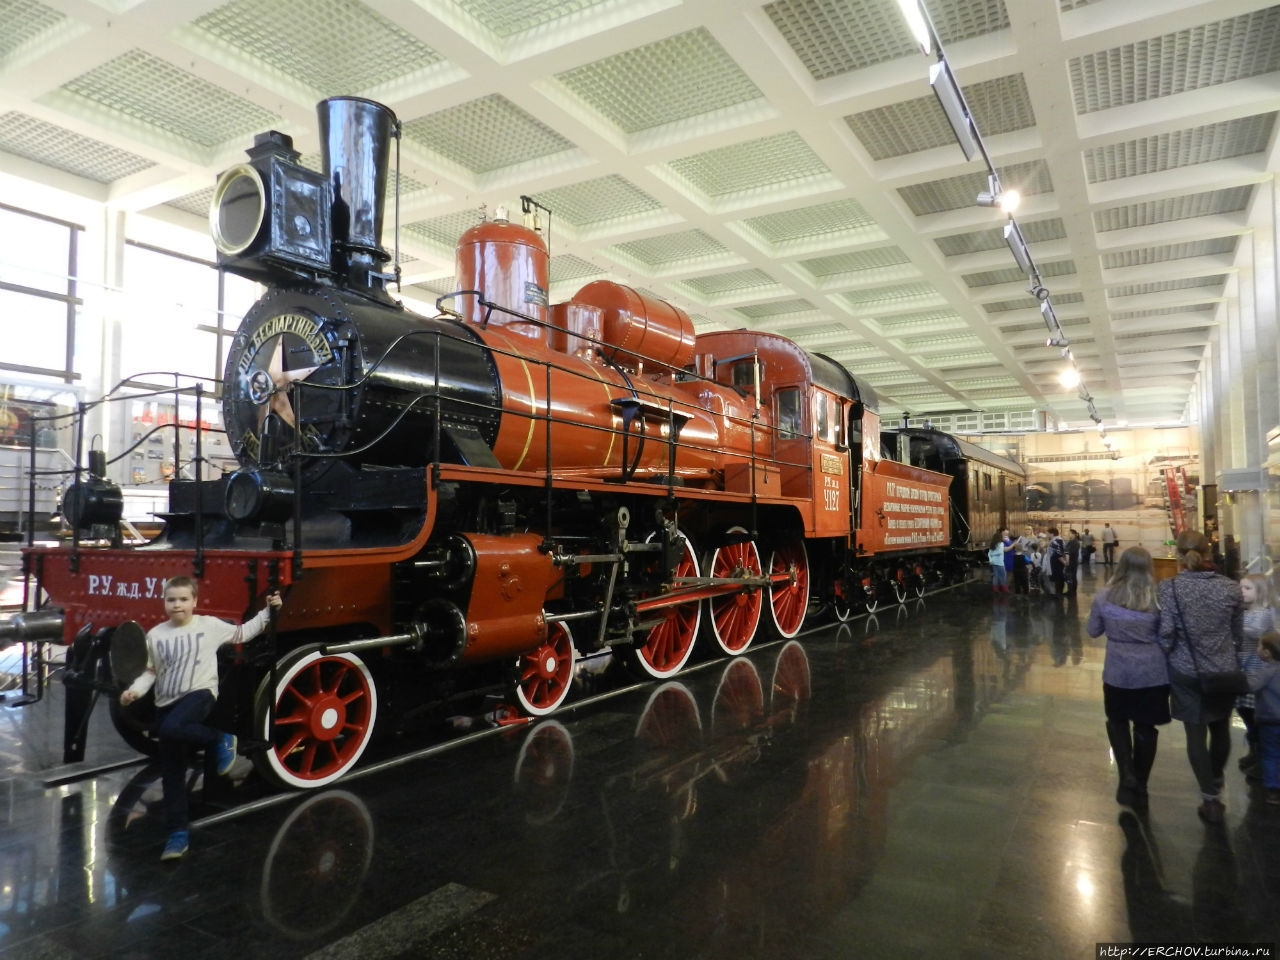 Музей московской железной дороги / Museum of the Moscow railway